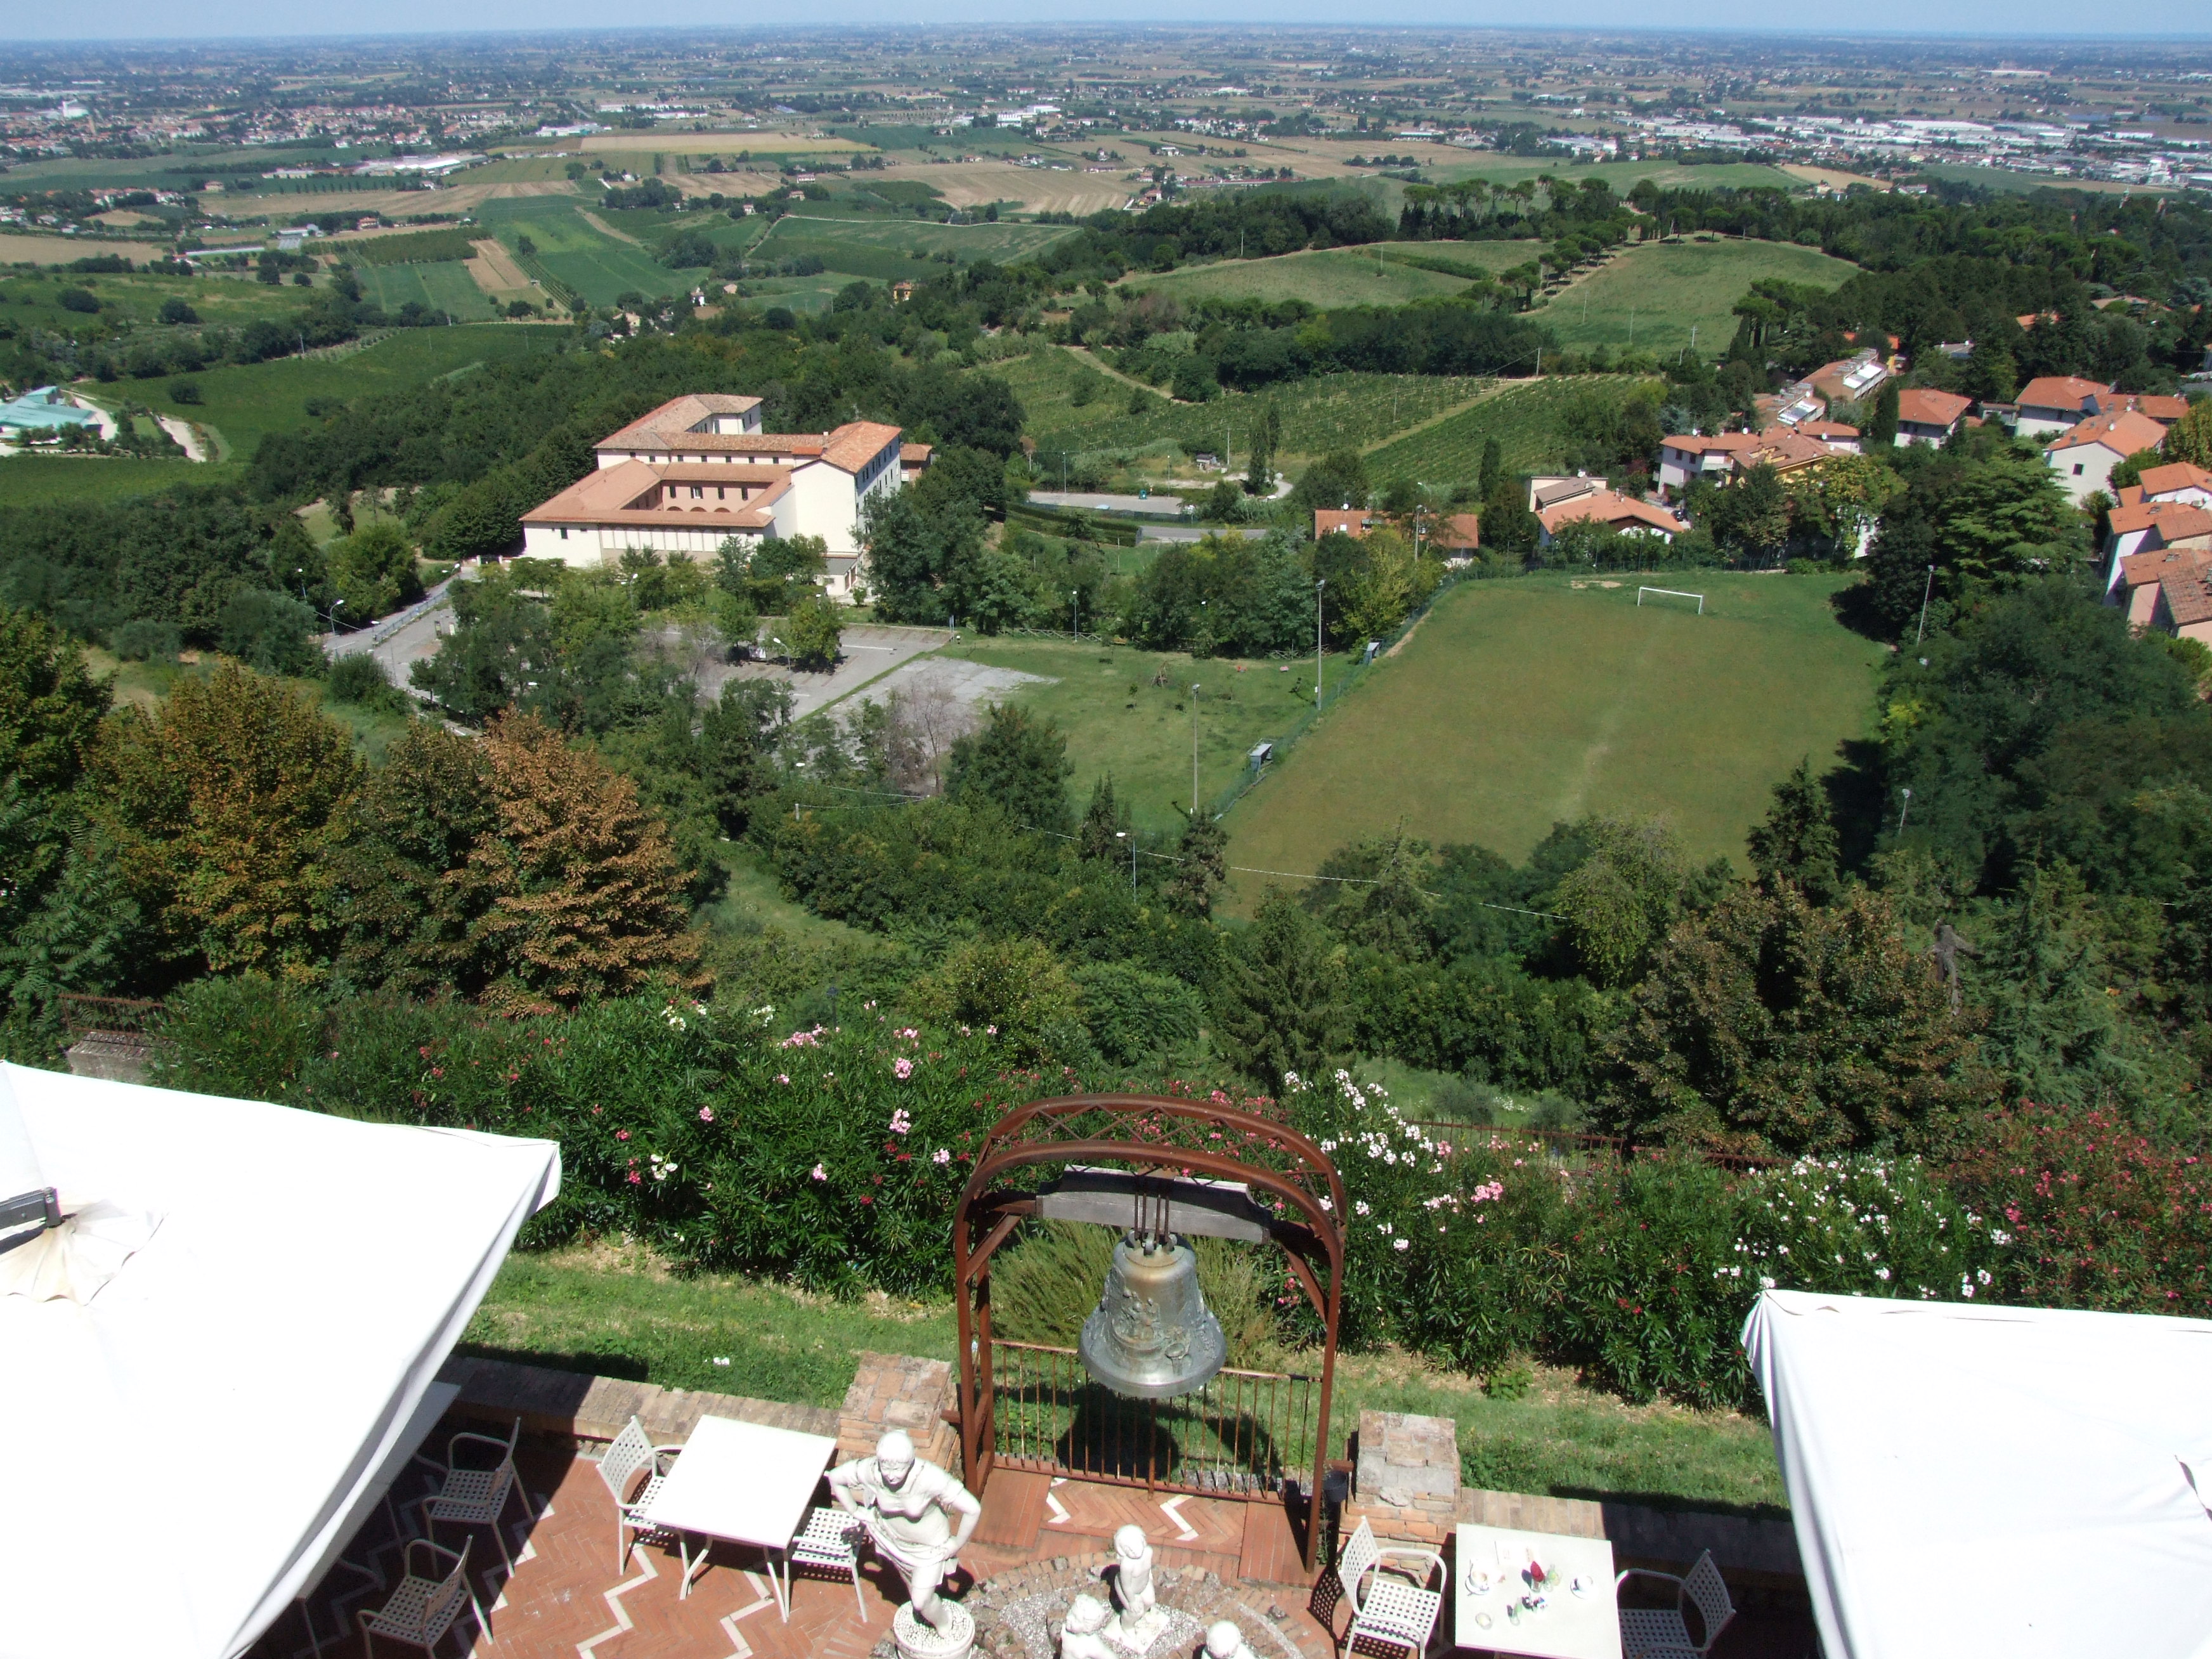 photo: https://upload.wikimedia.org/wikipedia/commons/d/d8/Balcone_di_Romagna_-_Bertinoro_9.jpg